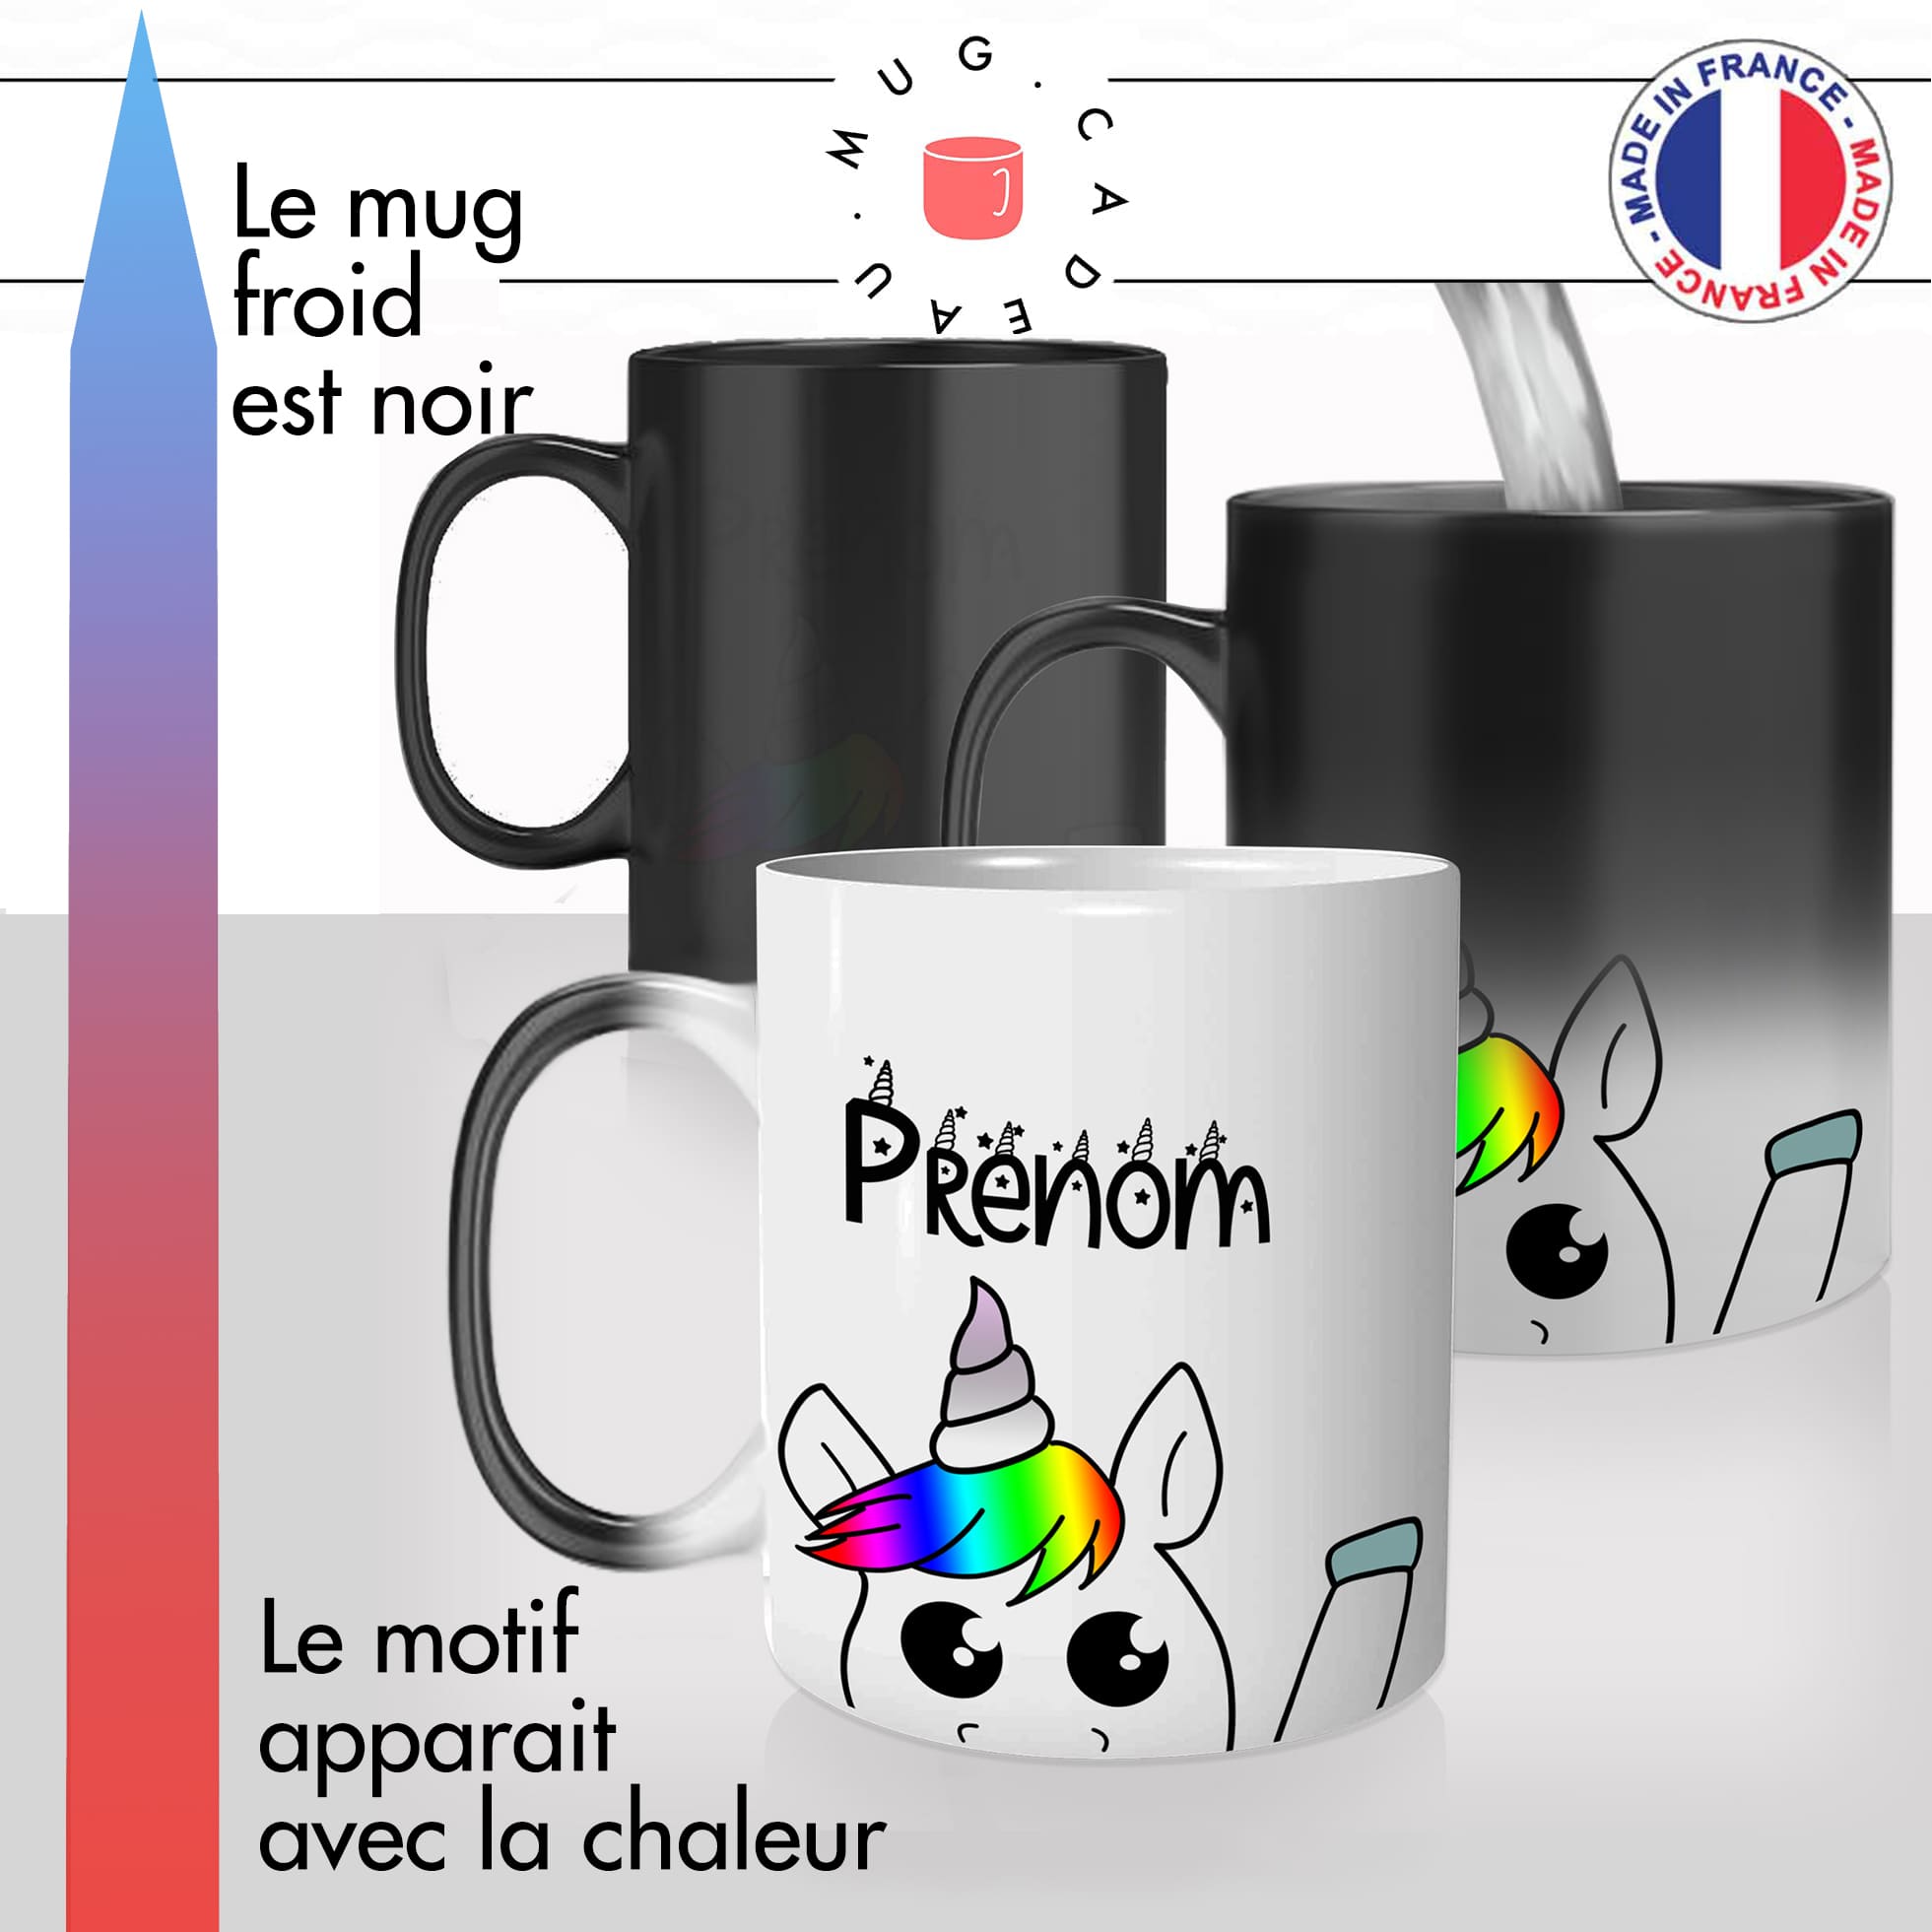 mug magique thermoreactif thermochauffant personnalisé licorne coucou prenom personnalisable idée cadeau fun